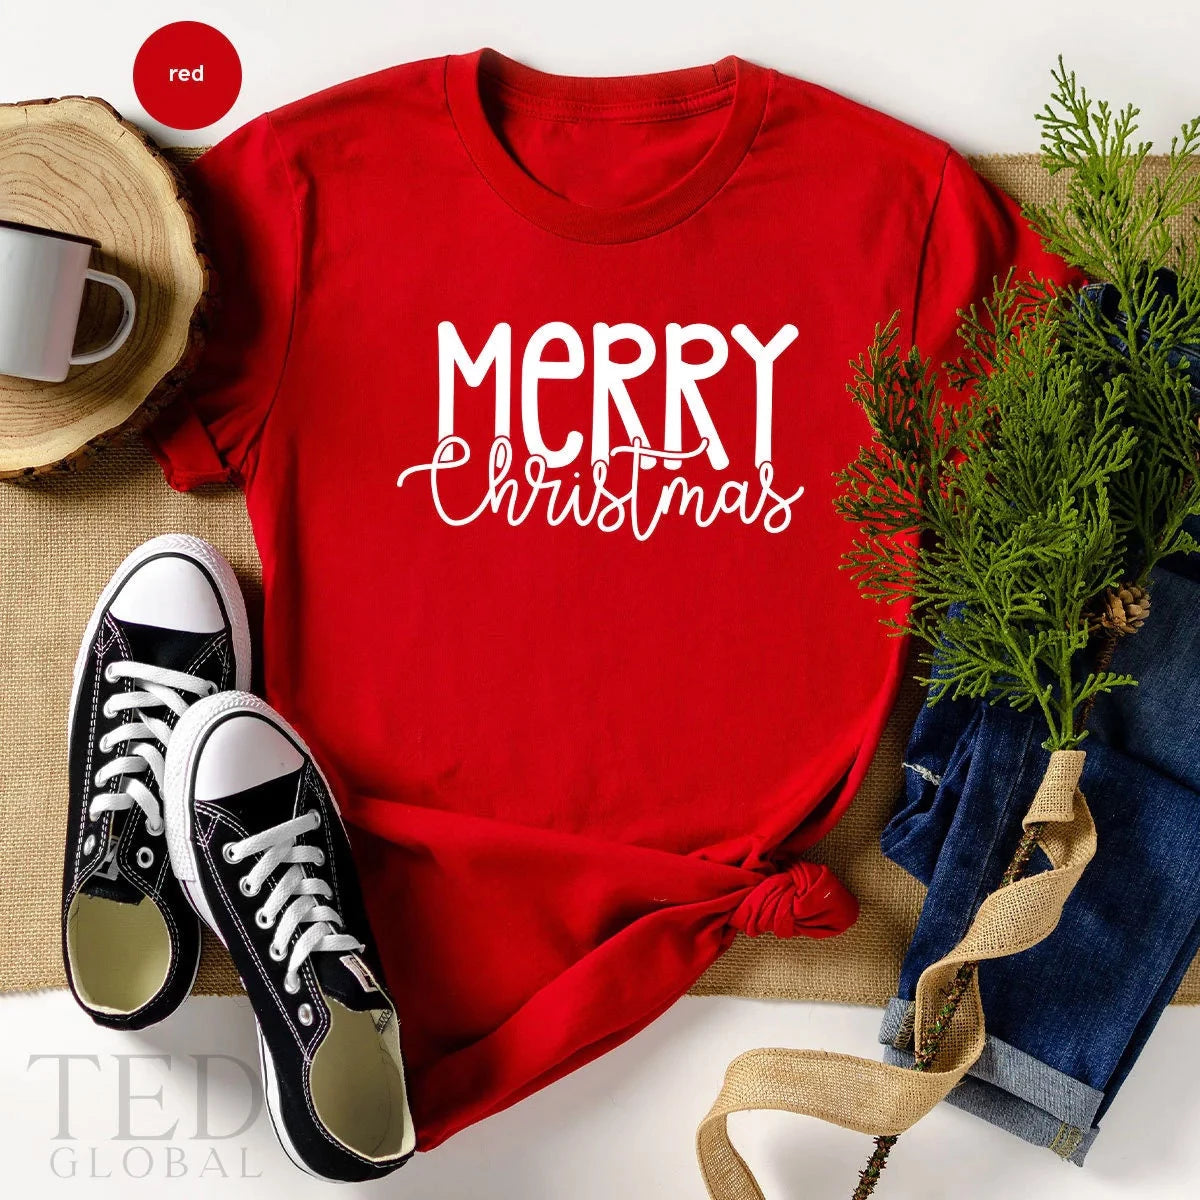 Christmas T-shirts, Funny Christmas T-shirts, Christmas T-Shirts For Family